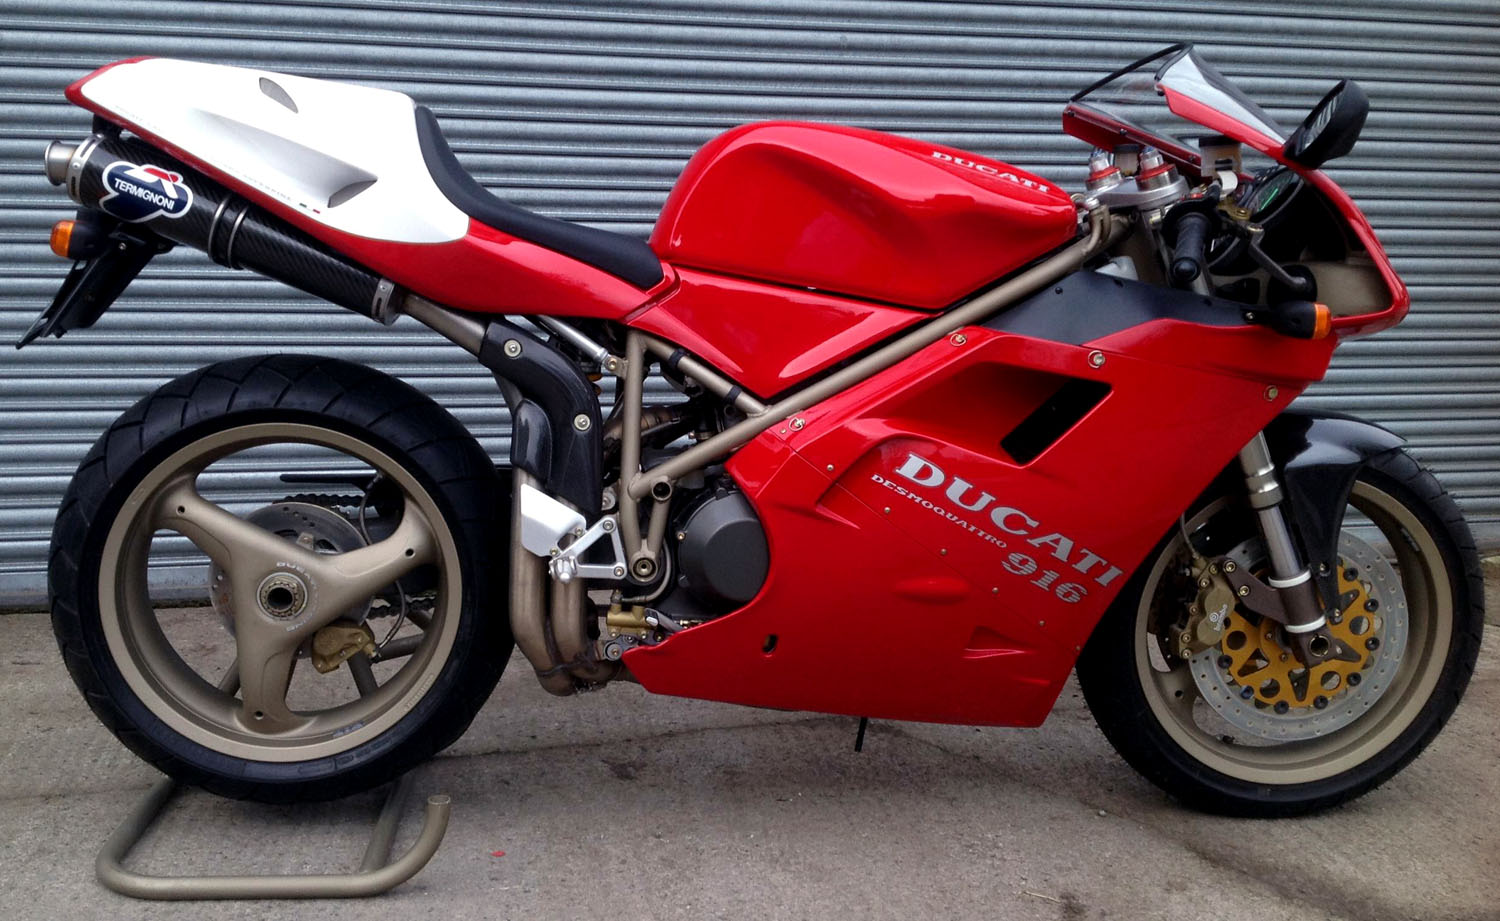 OddBike: Ducati 916 SP SPS Desmoquattro Superbikes